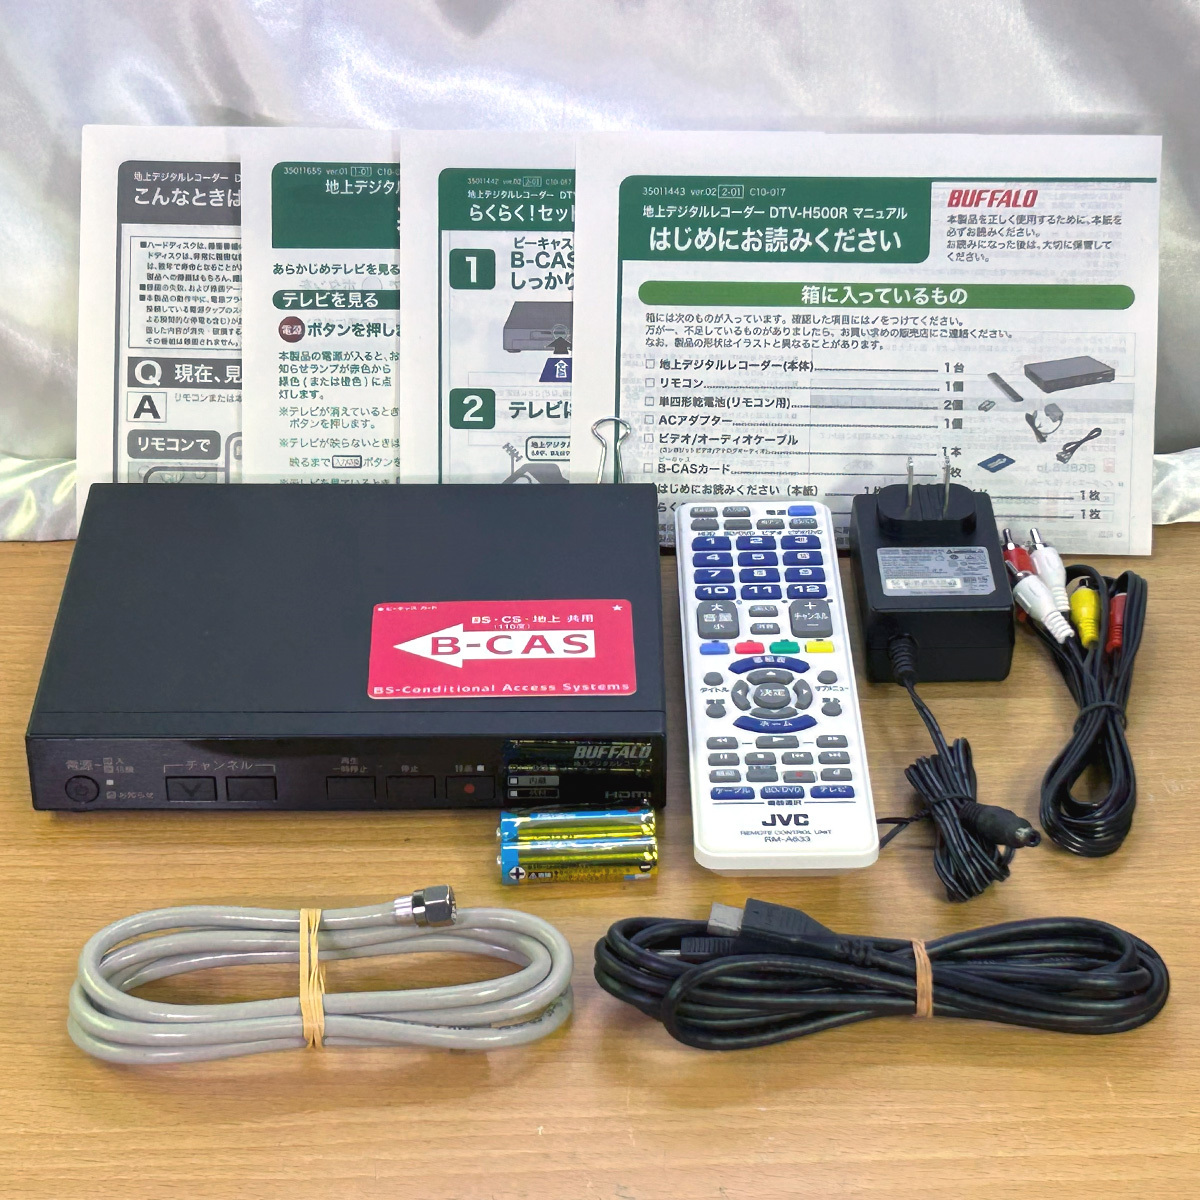 BUFFALO 地デジ対応HDDレコーダー DTV-H500R カスタム メンテナンス済/500GB/熱対策 23_一式